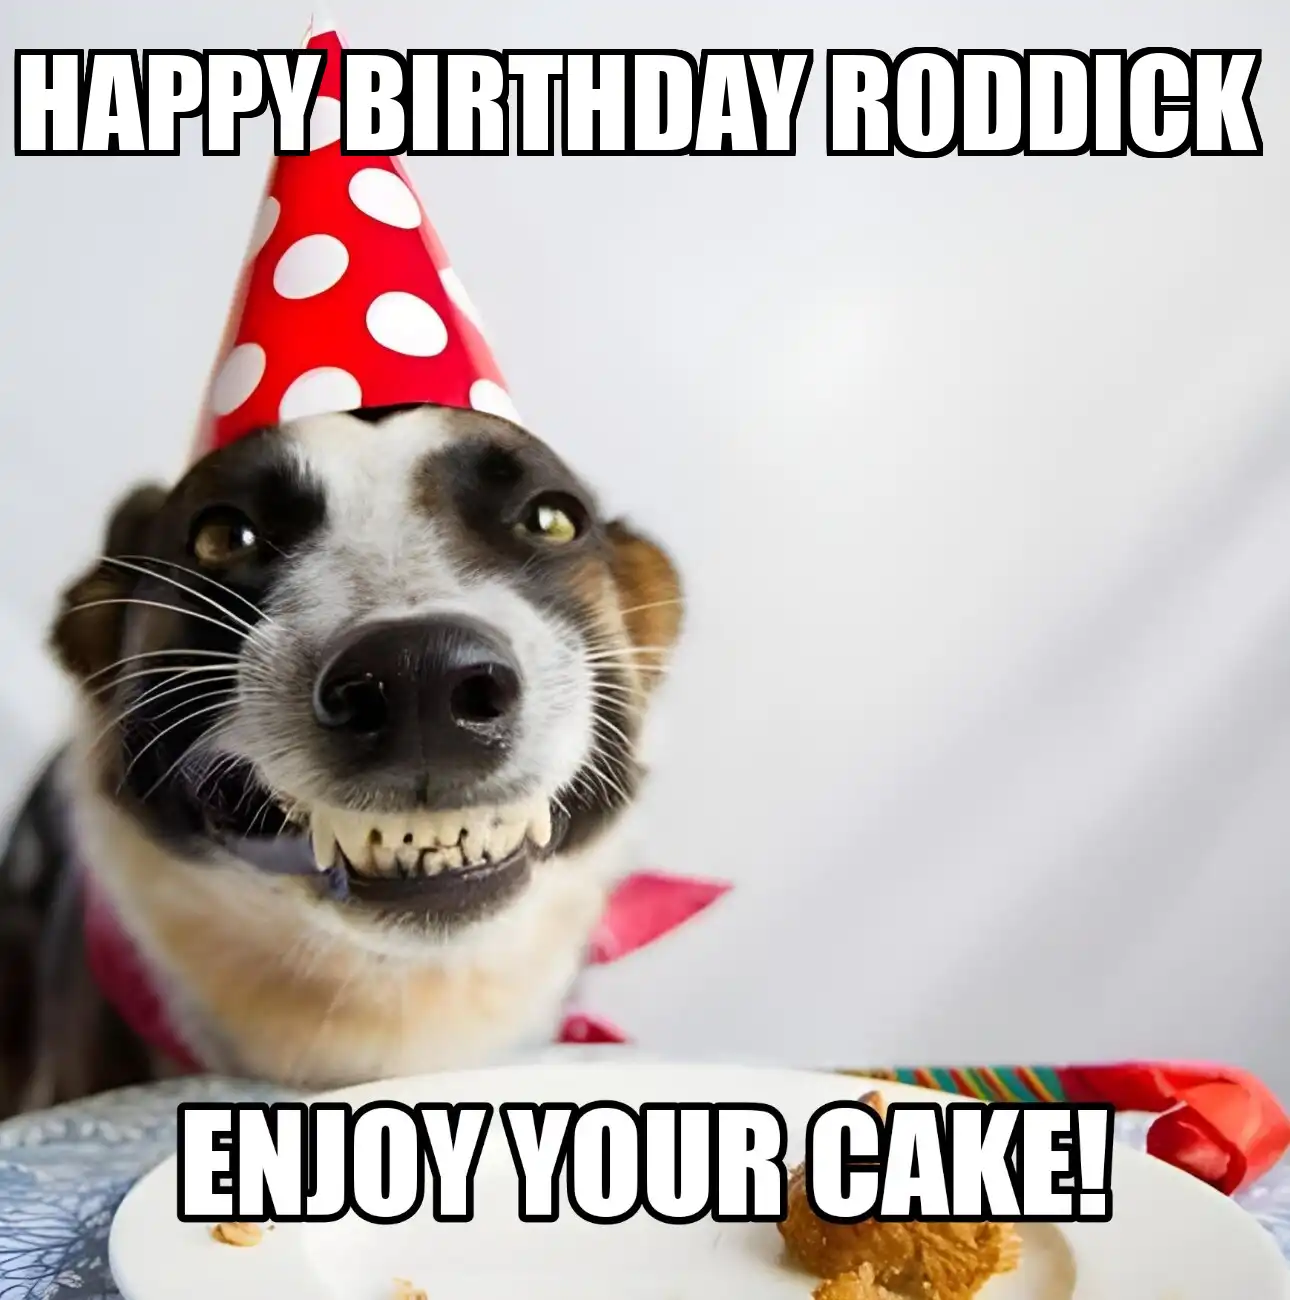 Happy Birthday Roddick Enjoy Your Cake Dog Meme